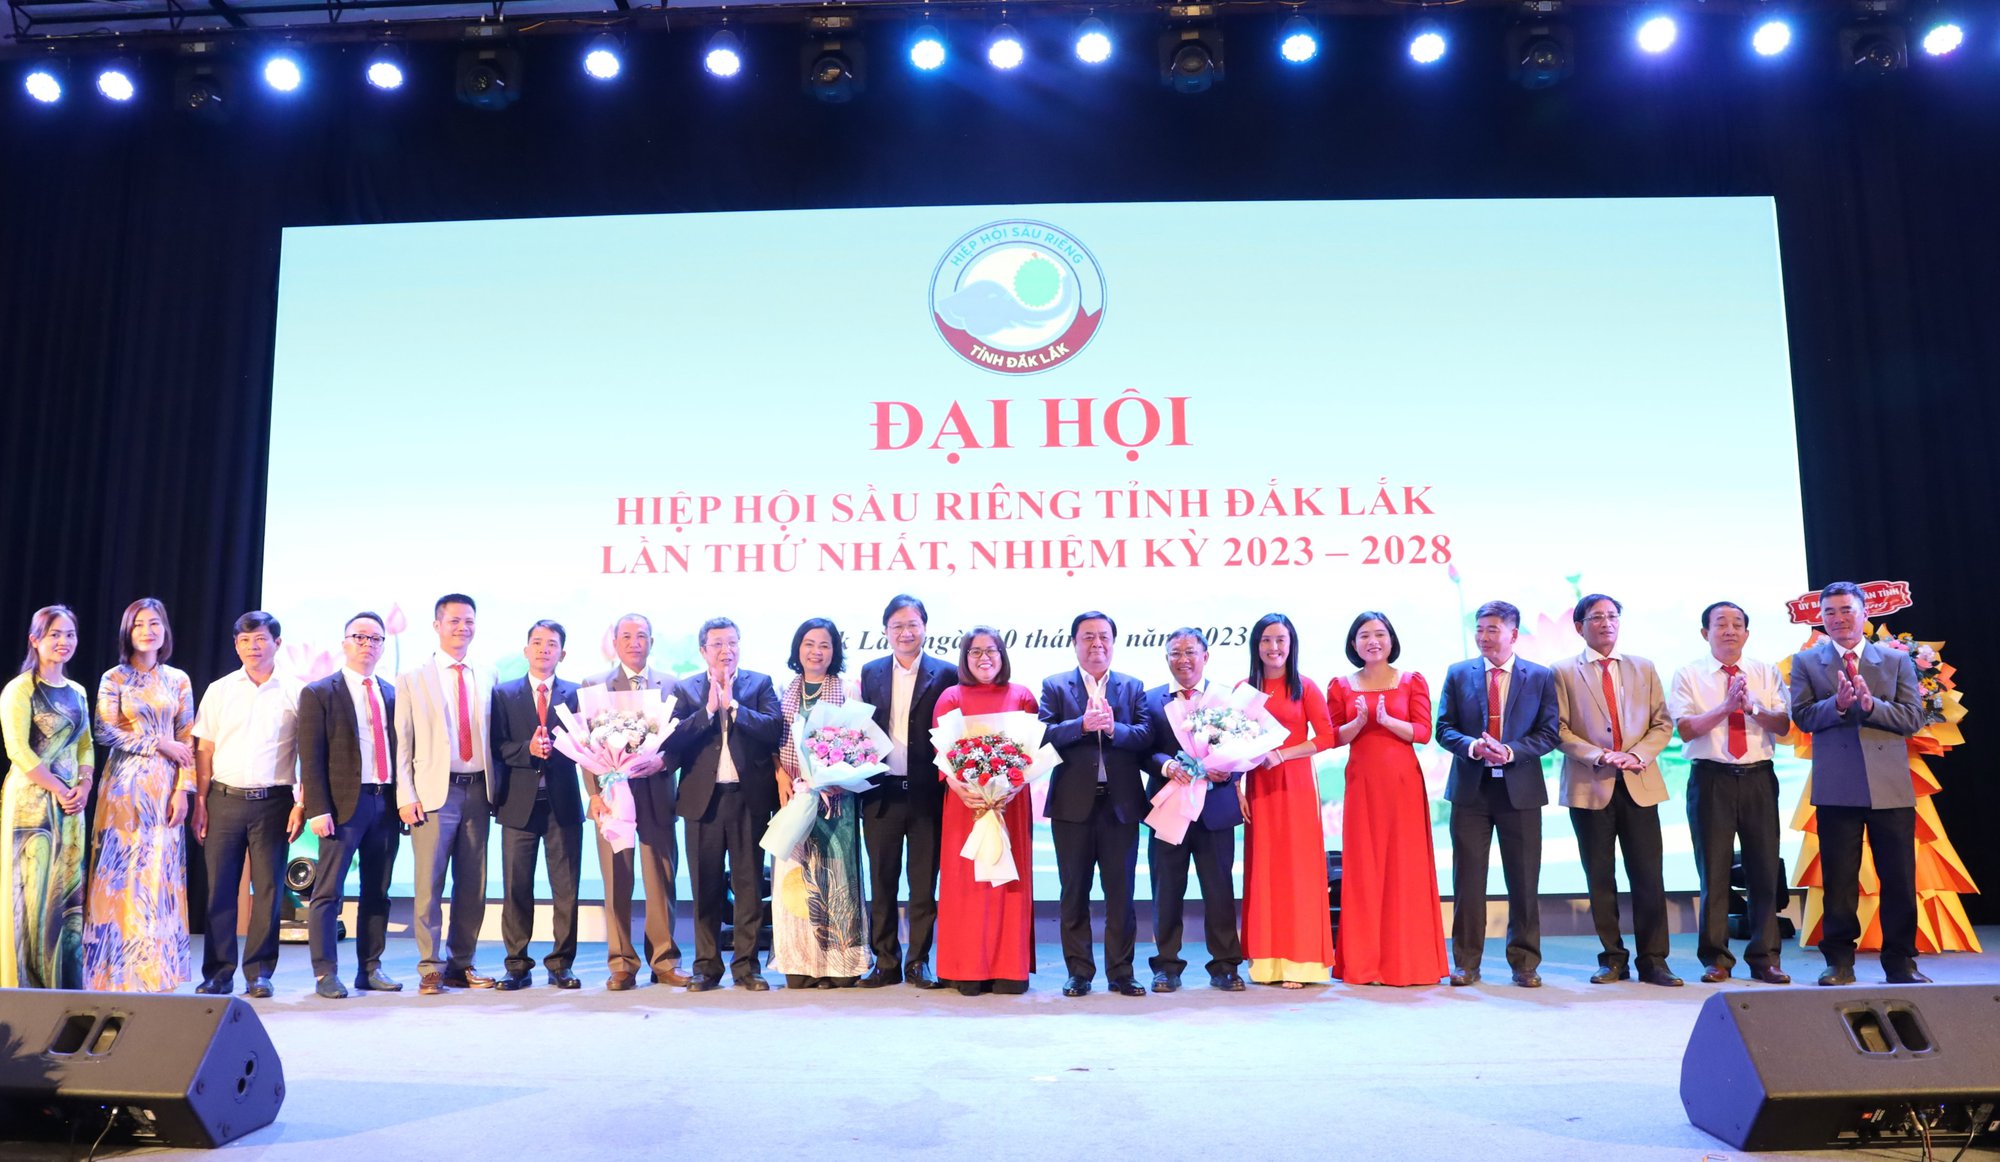 Hiệp hội Sầu riêng tỉnh Đắk Lắk tổ chức Đại hội lần thứ I - Ảnh 4.